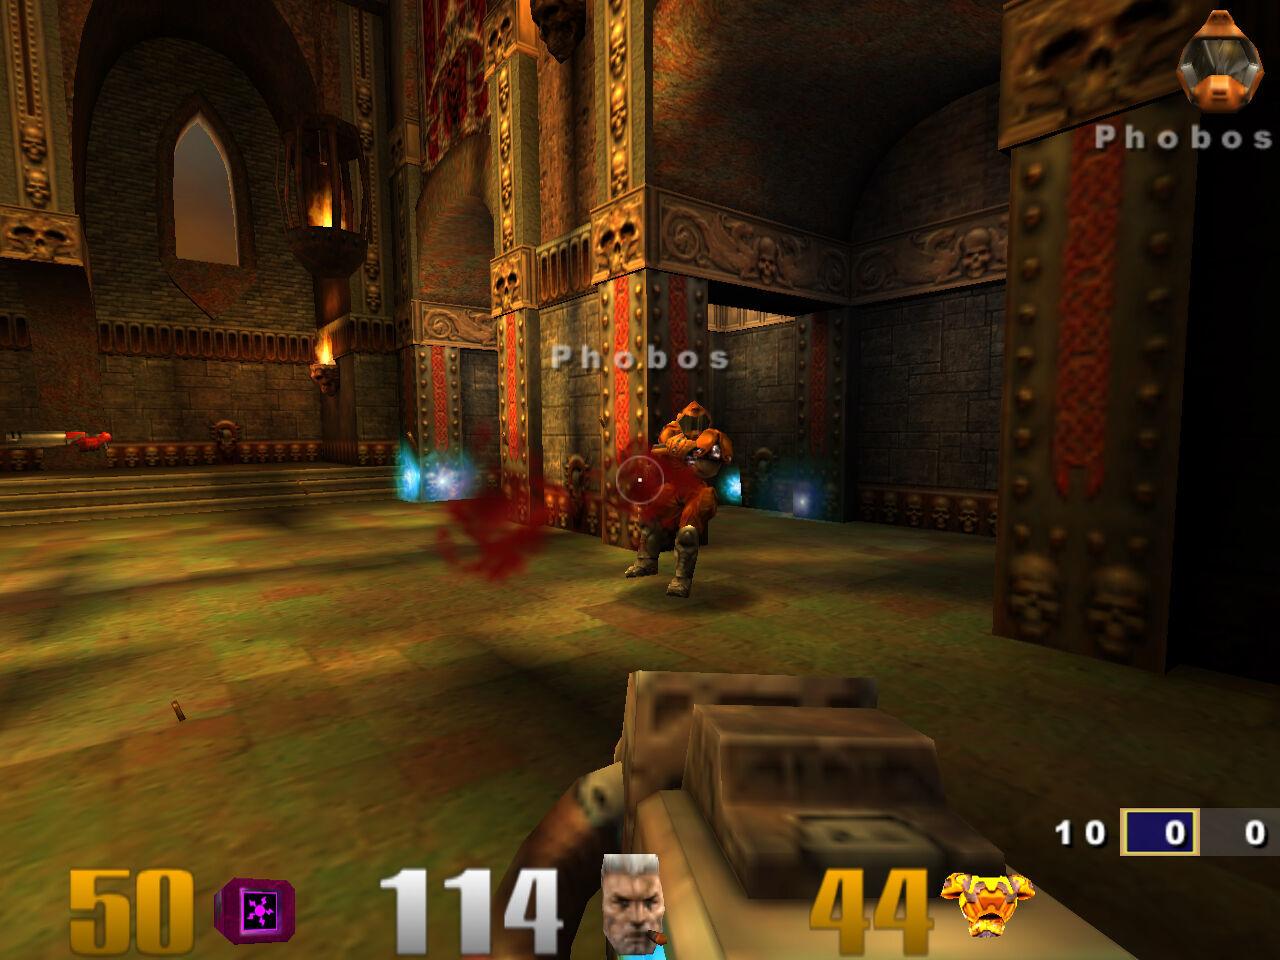 Quake III: Gold GOG CD Key